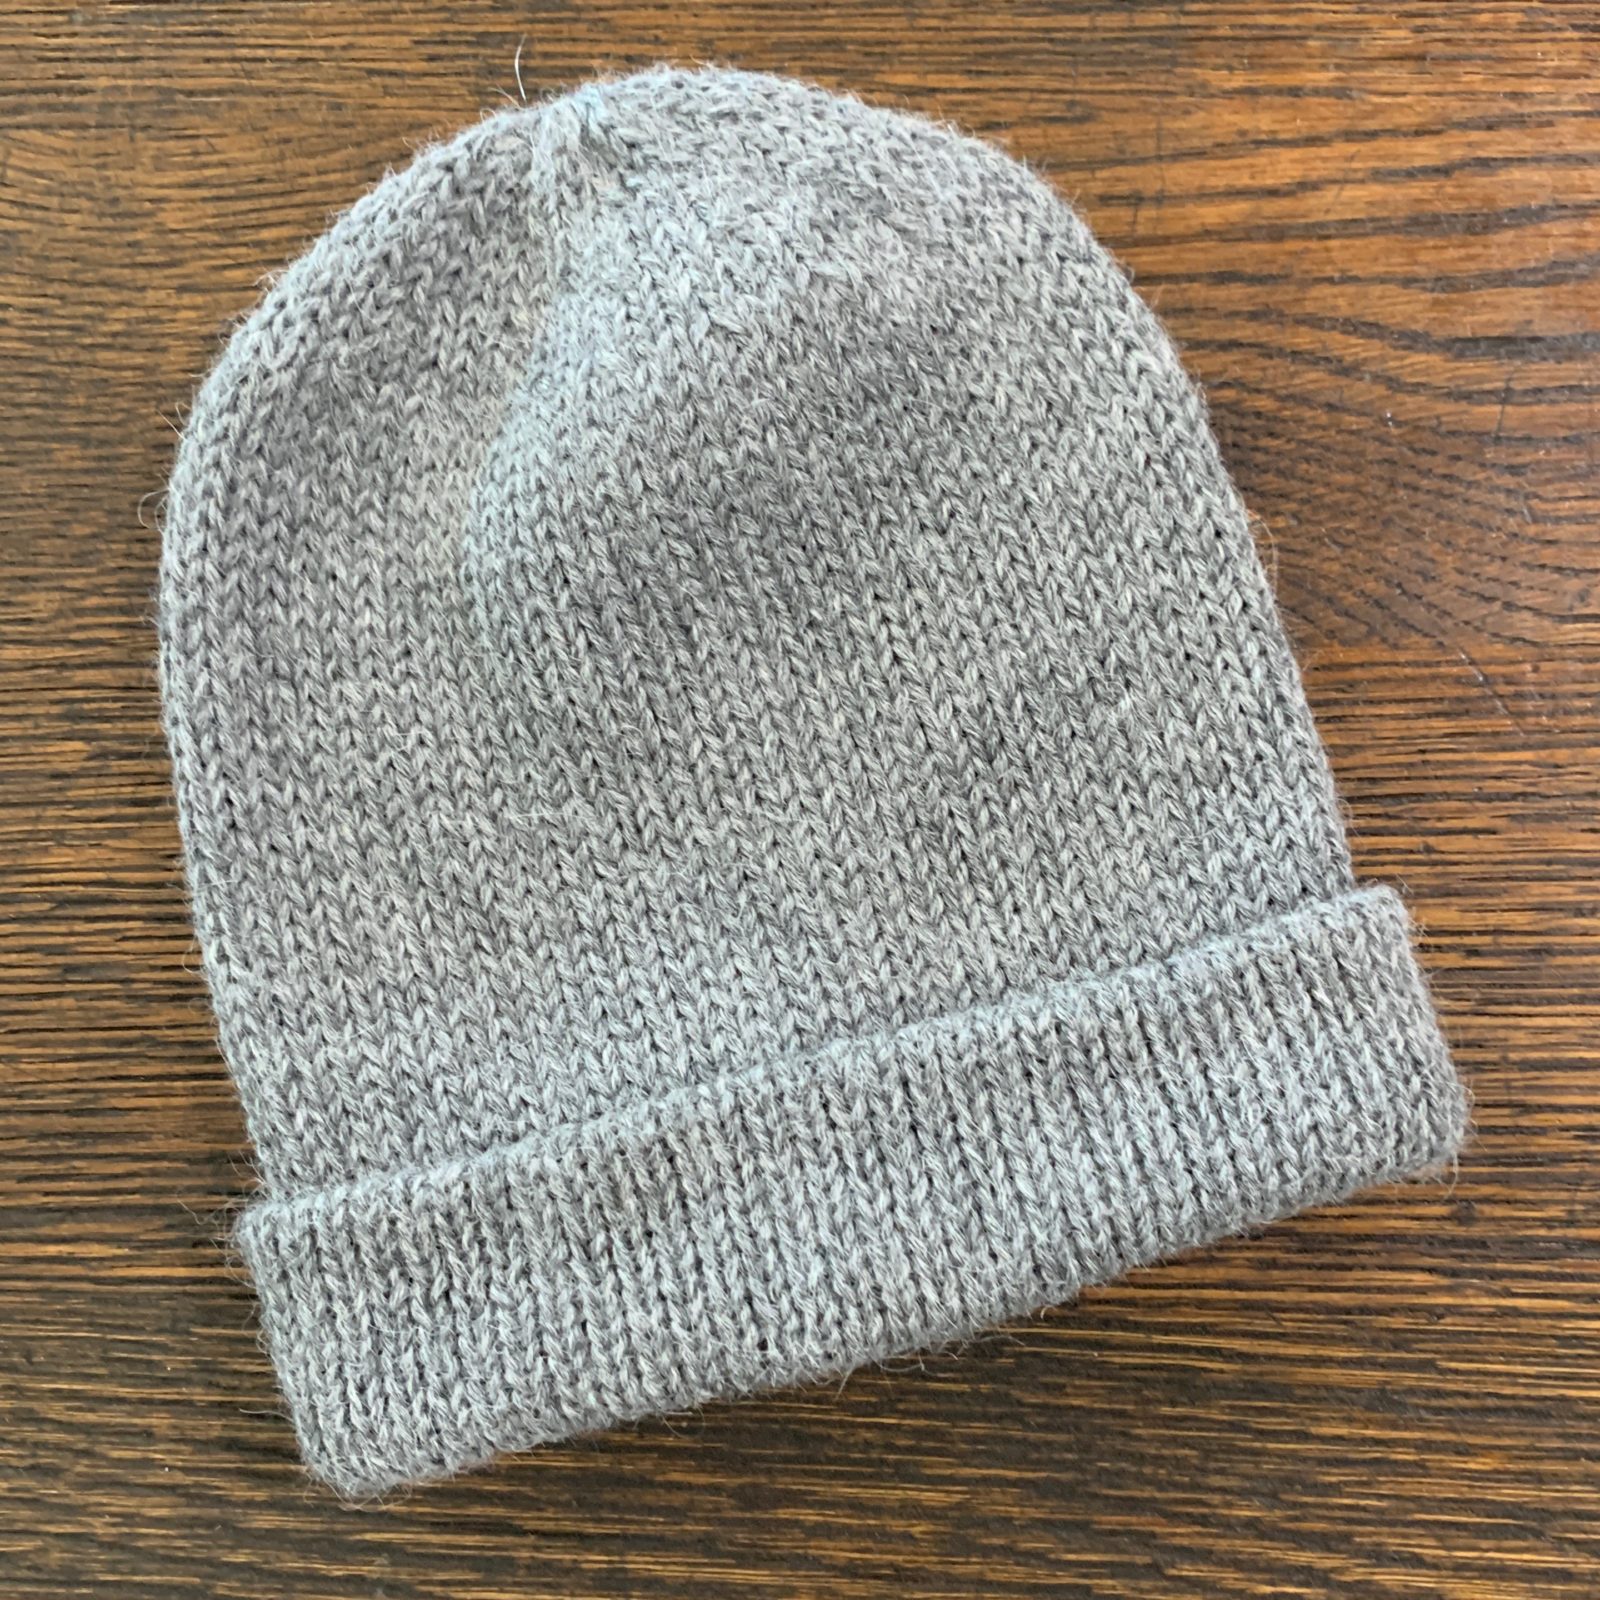 Fisherman Knit Hat in 100% Alpaca